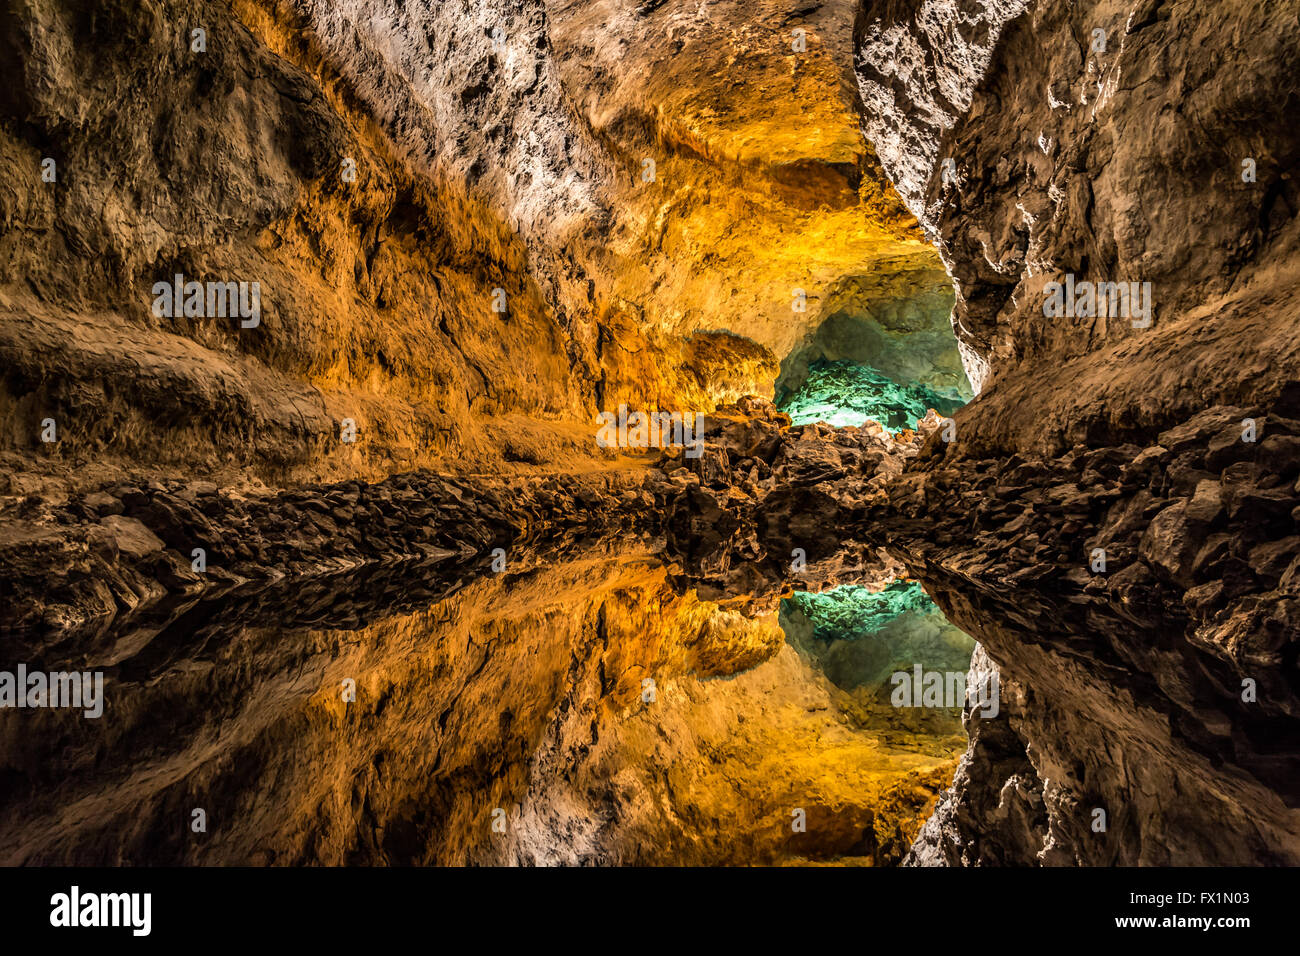 Ilusión óptica - agua reflejo en la Cueva de los Verdes, un impresionante tubo de lava y atracción turística en la isla de Lanzarote Foto de stock